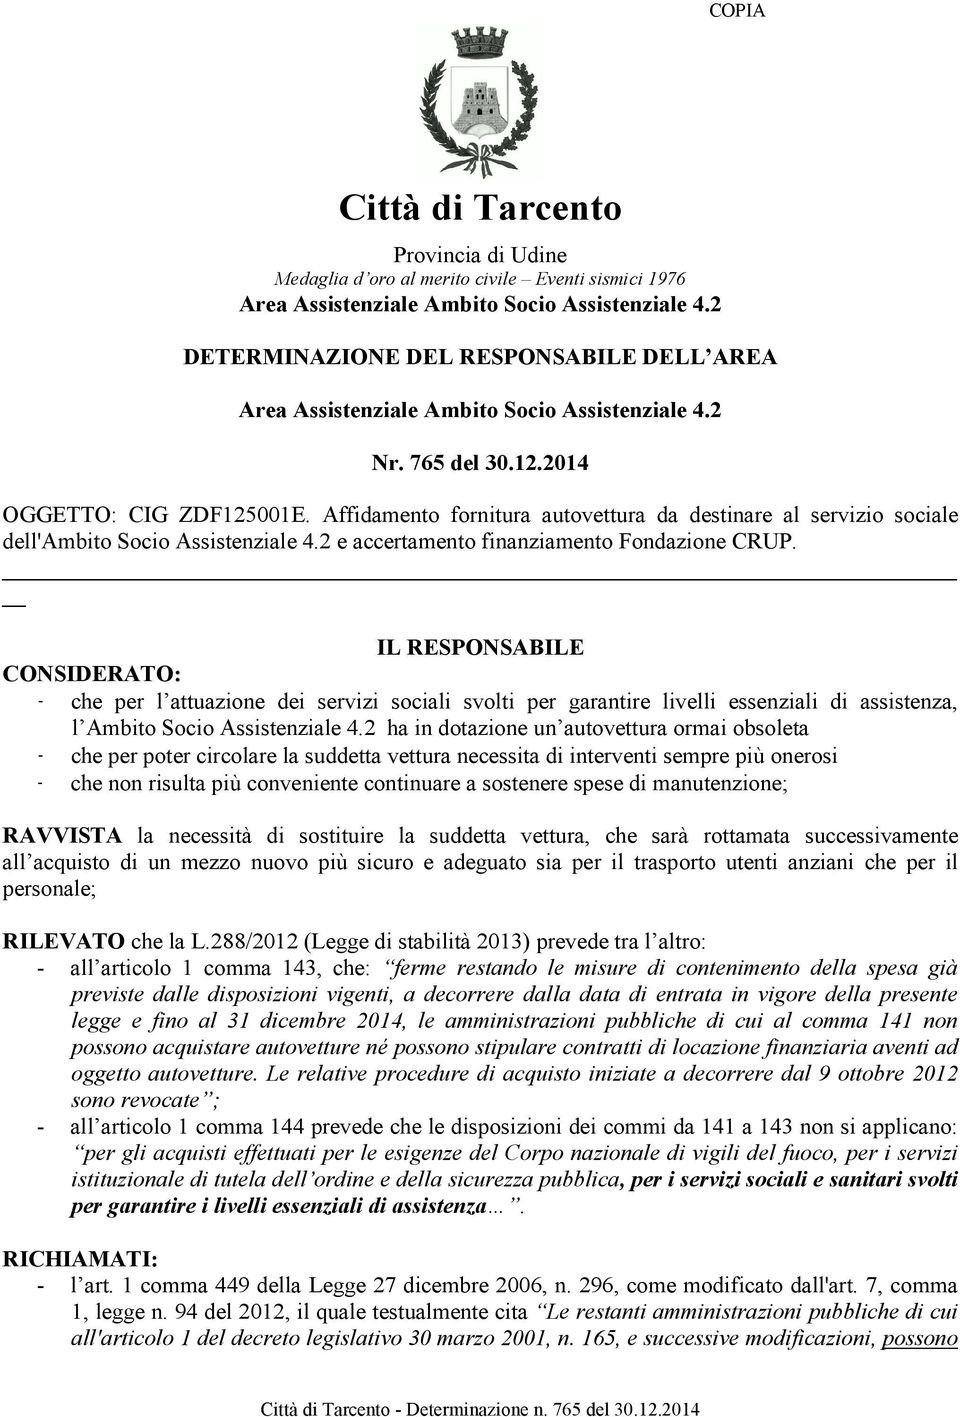 Affidamento fornitura autovettura da destinare al servizio sociale dell'ambito Socio Assistenziale 4.2 e accertamento finanziamento Fondazione CRUP.